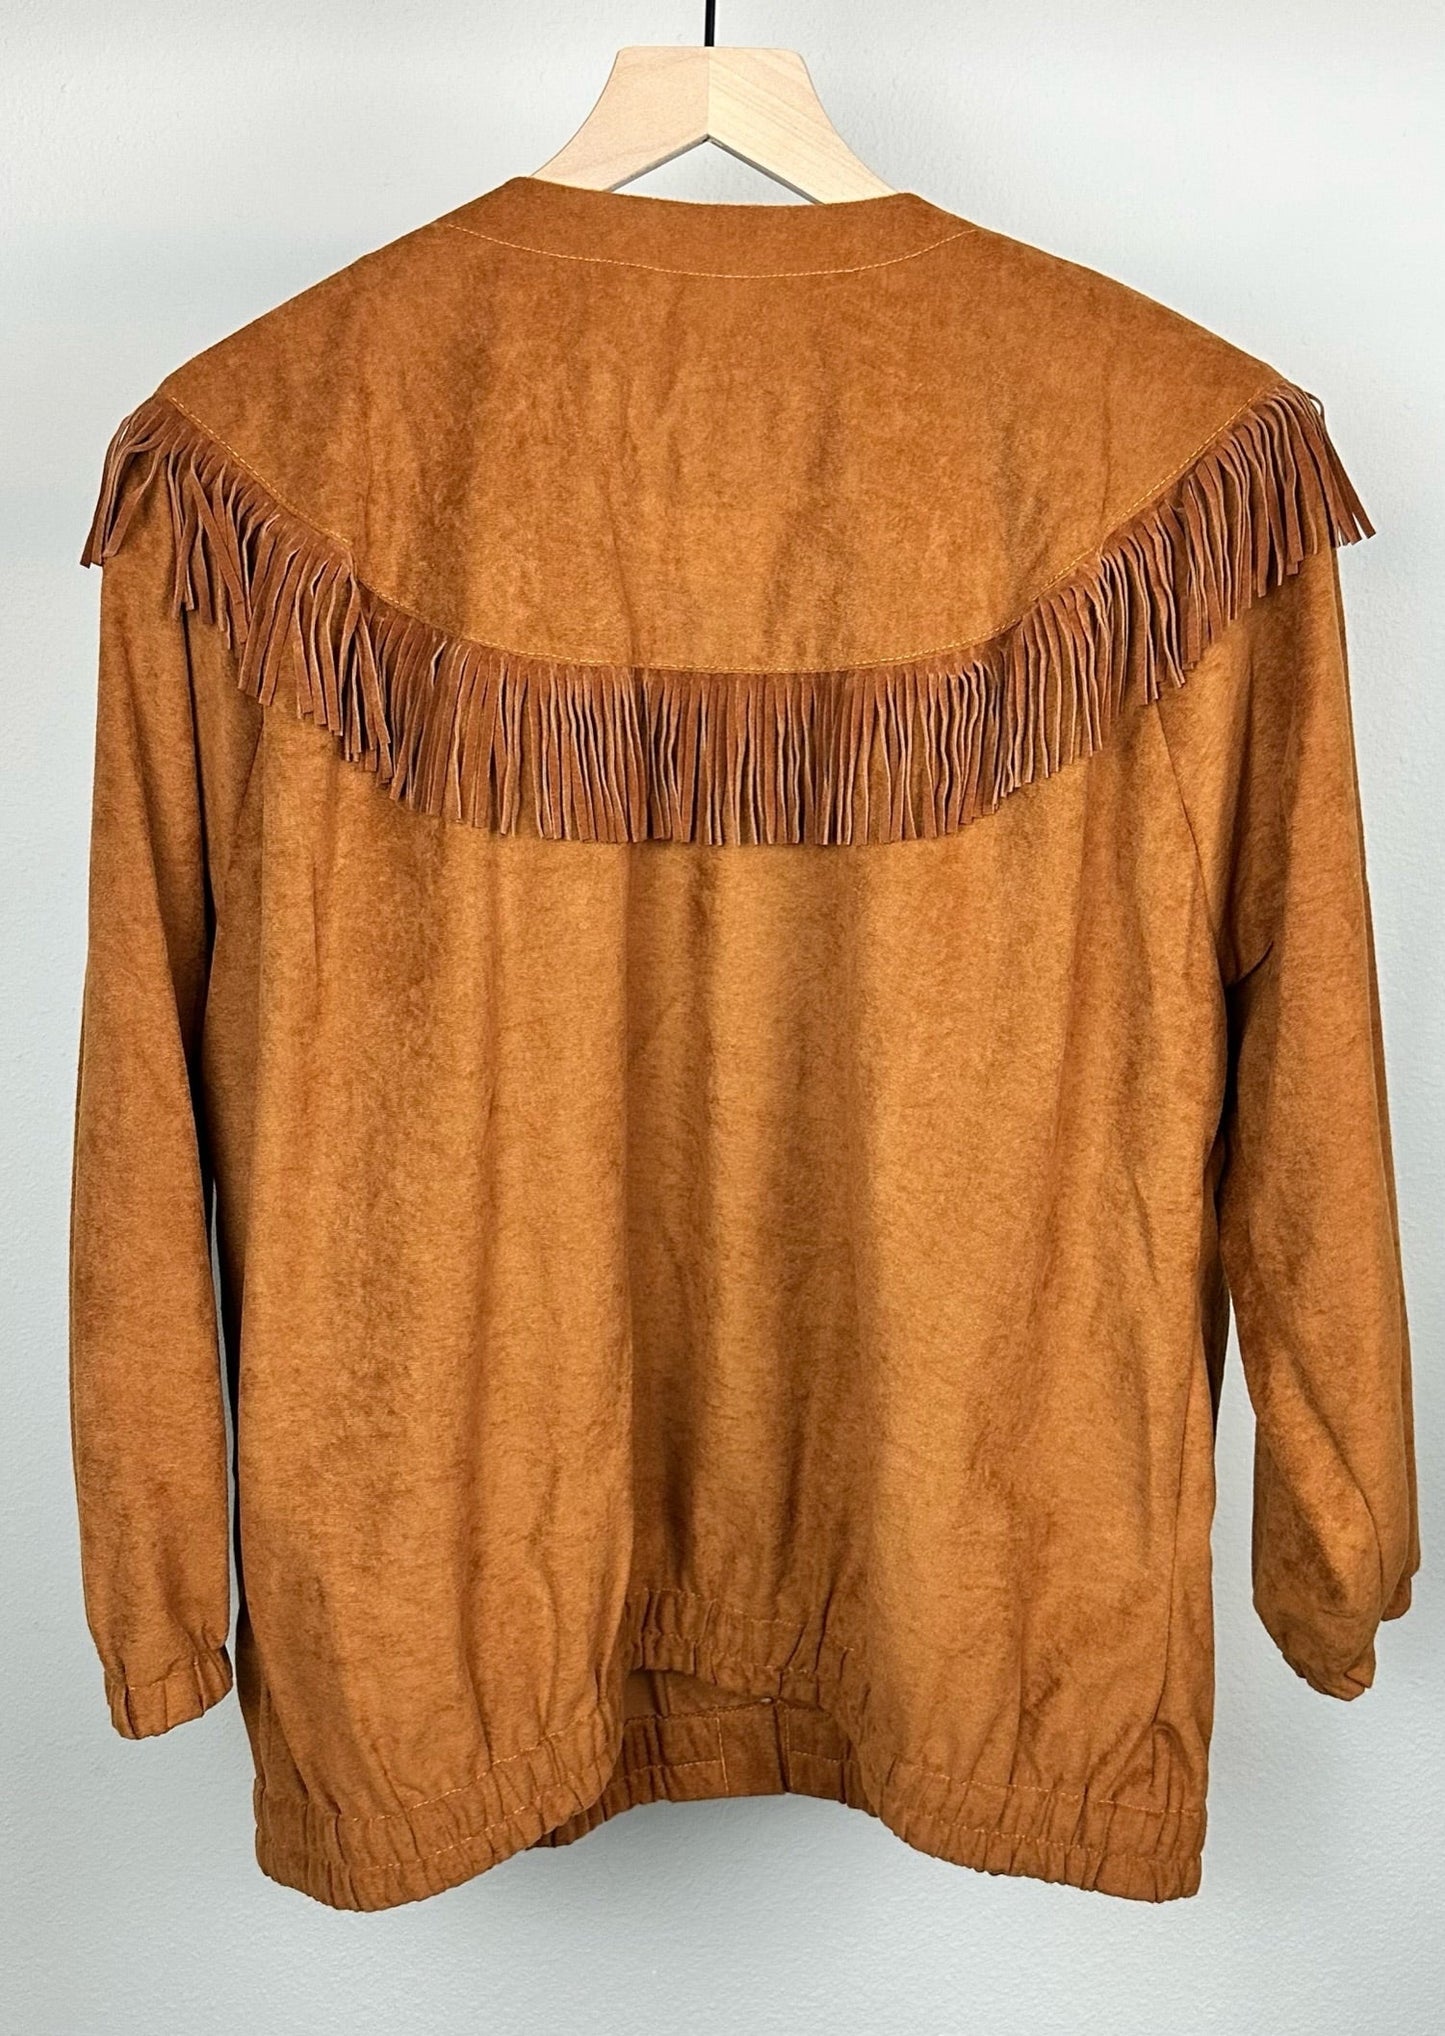 Western Fringe Jacket and Skirt Set